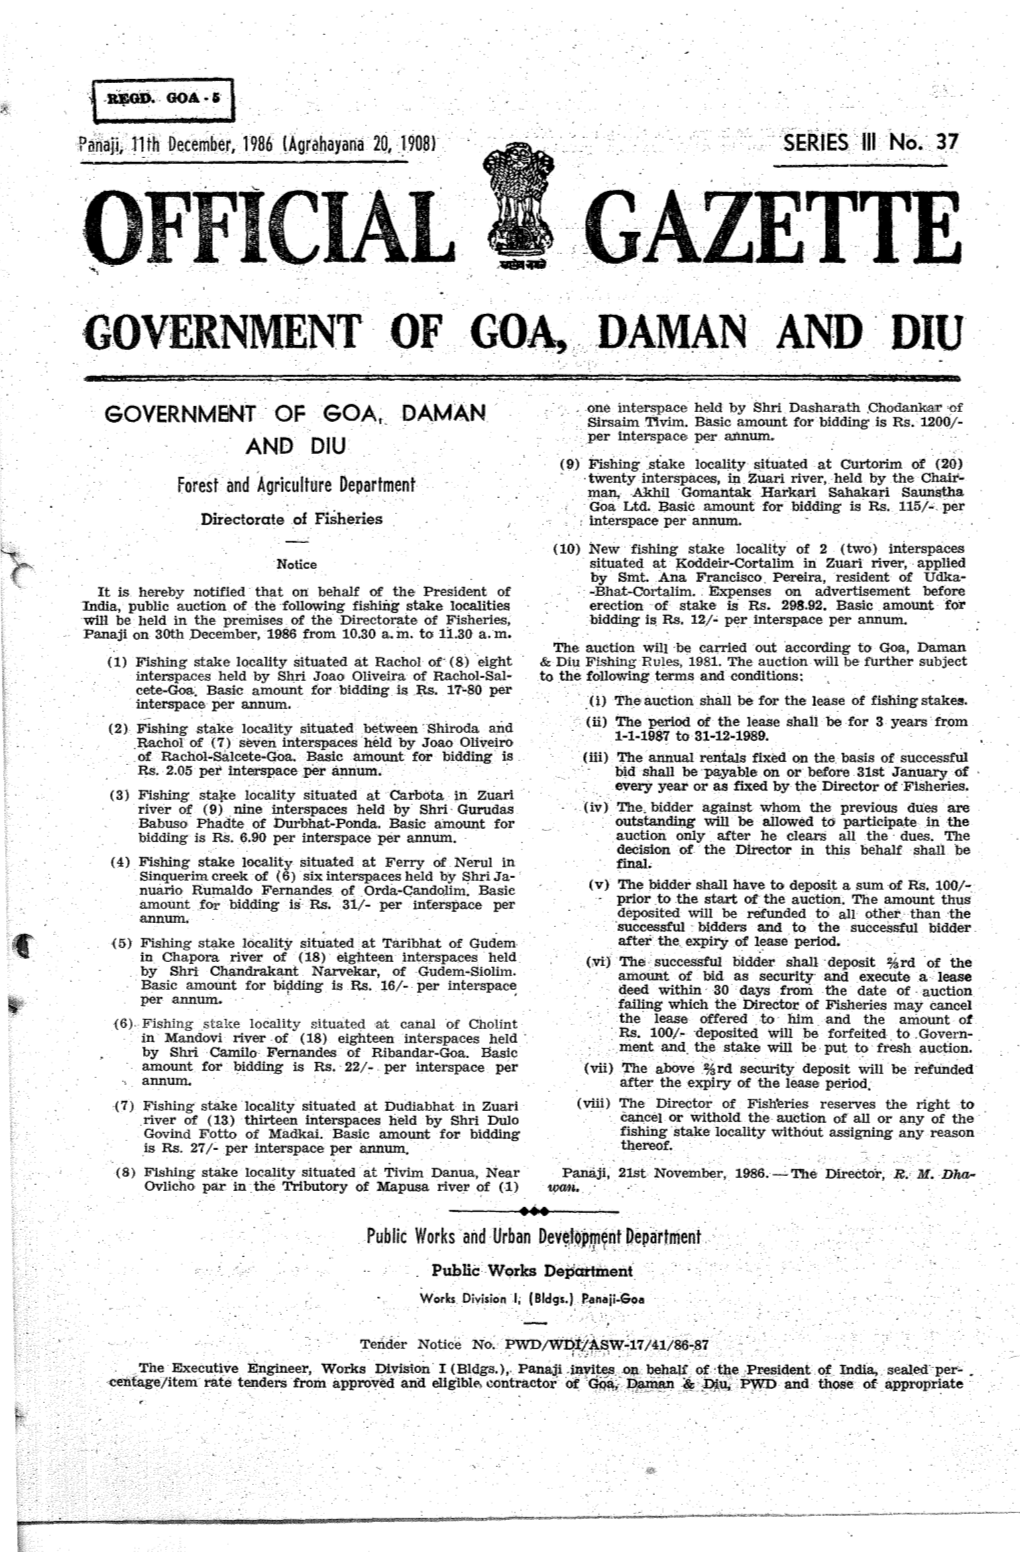 Gazette Government of Goa, ,Daman And' Diu